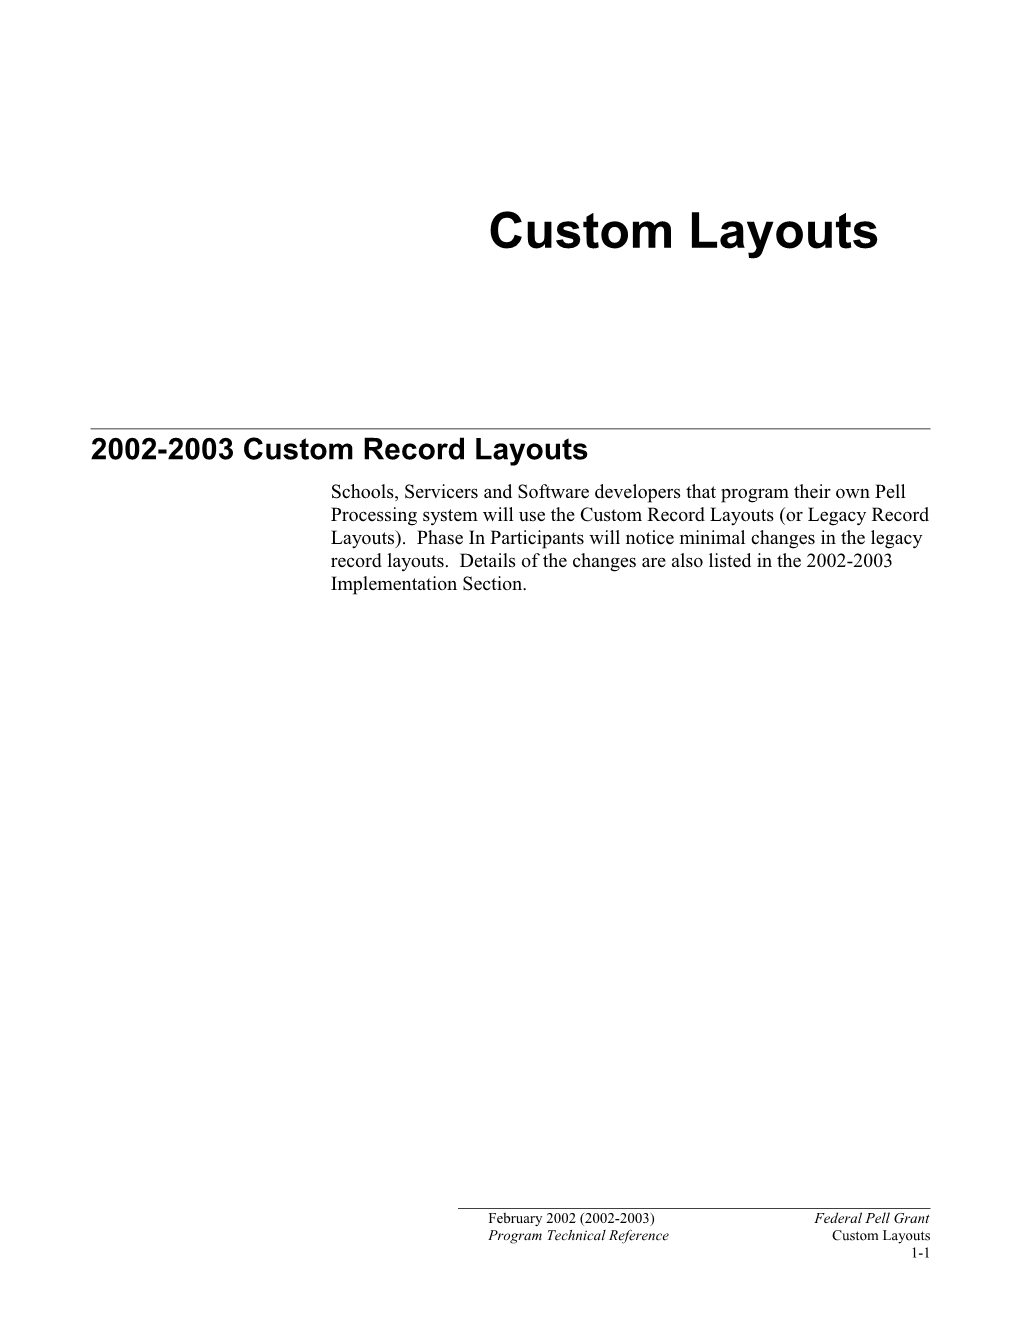 2002-2003 Custom Record Layouts